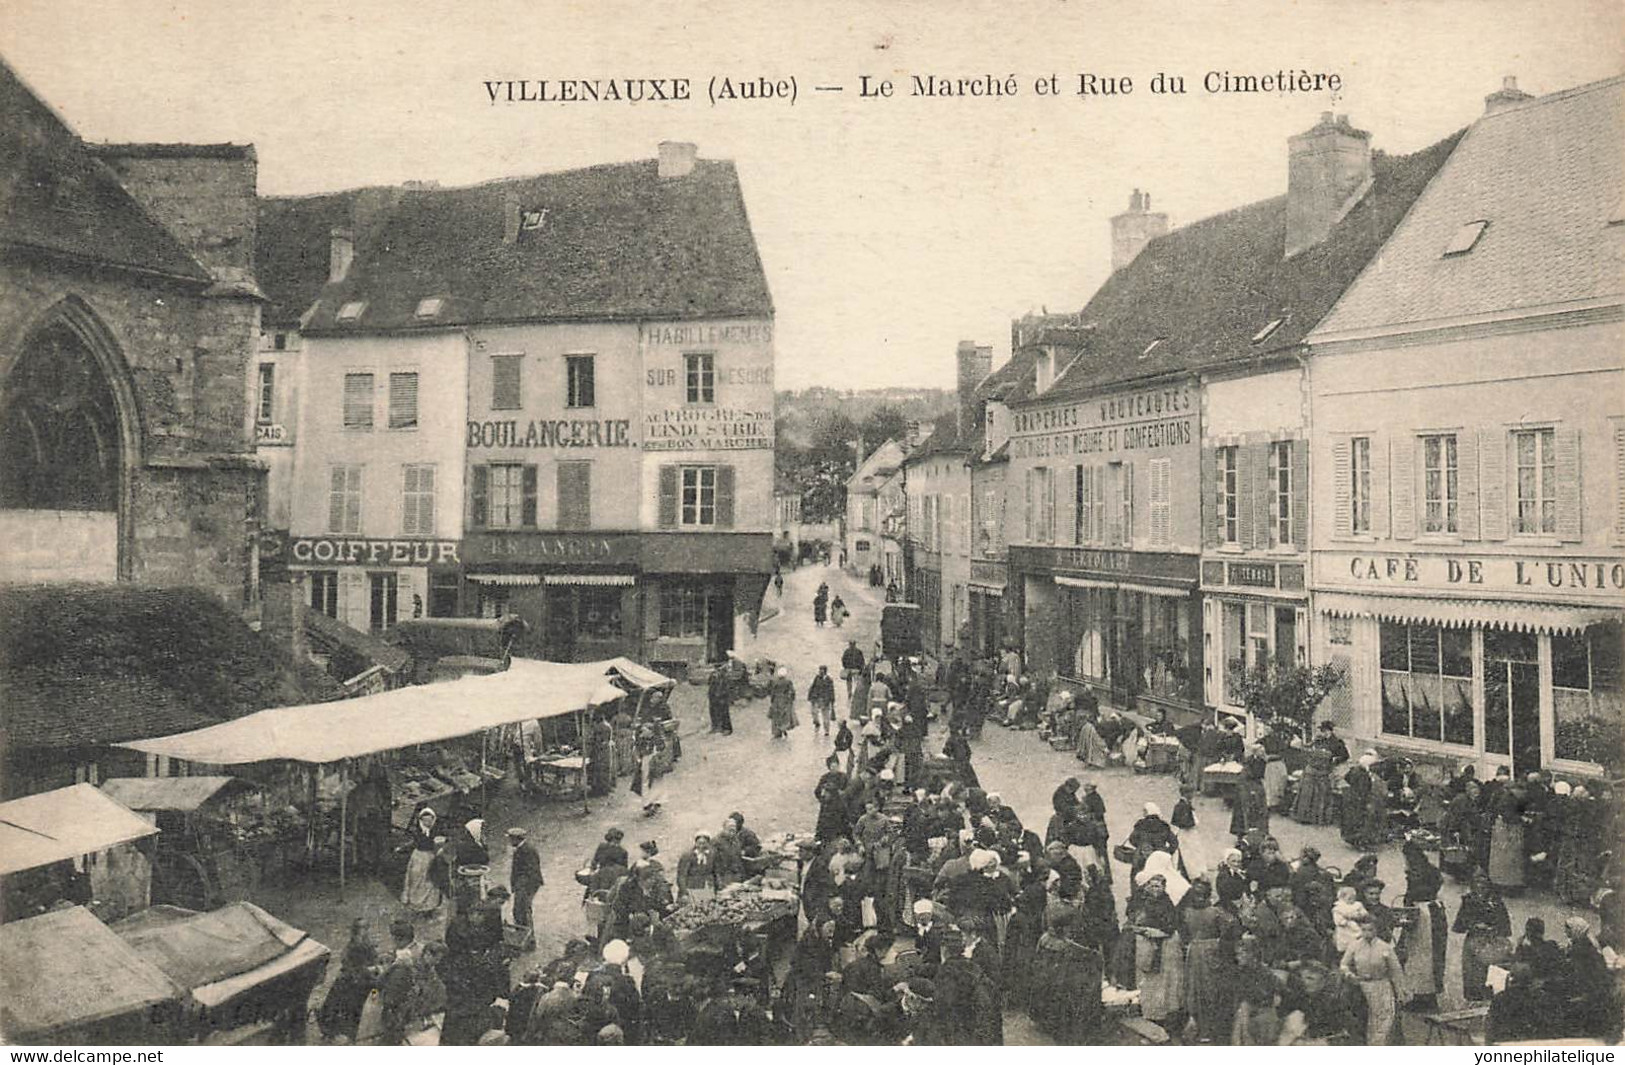 10 - AUBE - VILLENAUXE - Thème Marchés - Le Marché Et Rue Du Cimetière - Circulée En 1920 - 11395 - Marchés